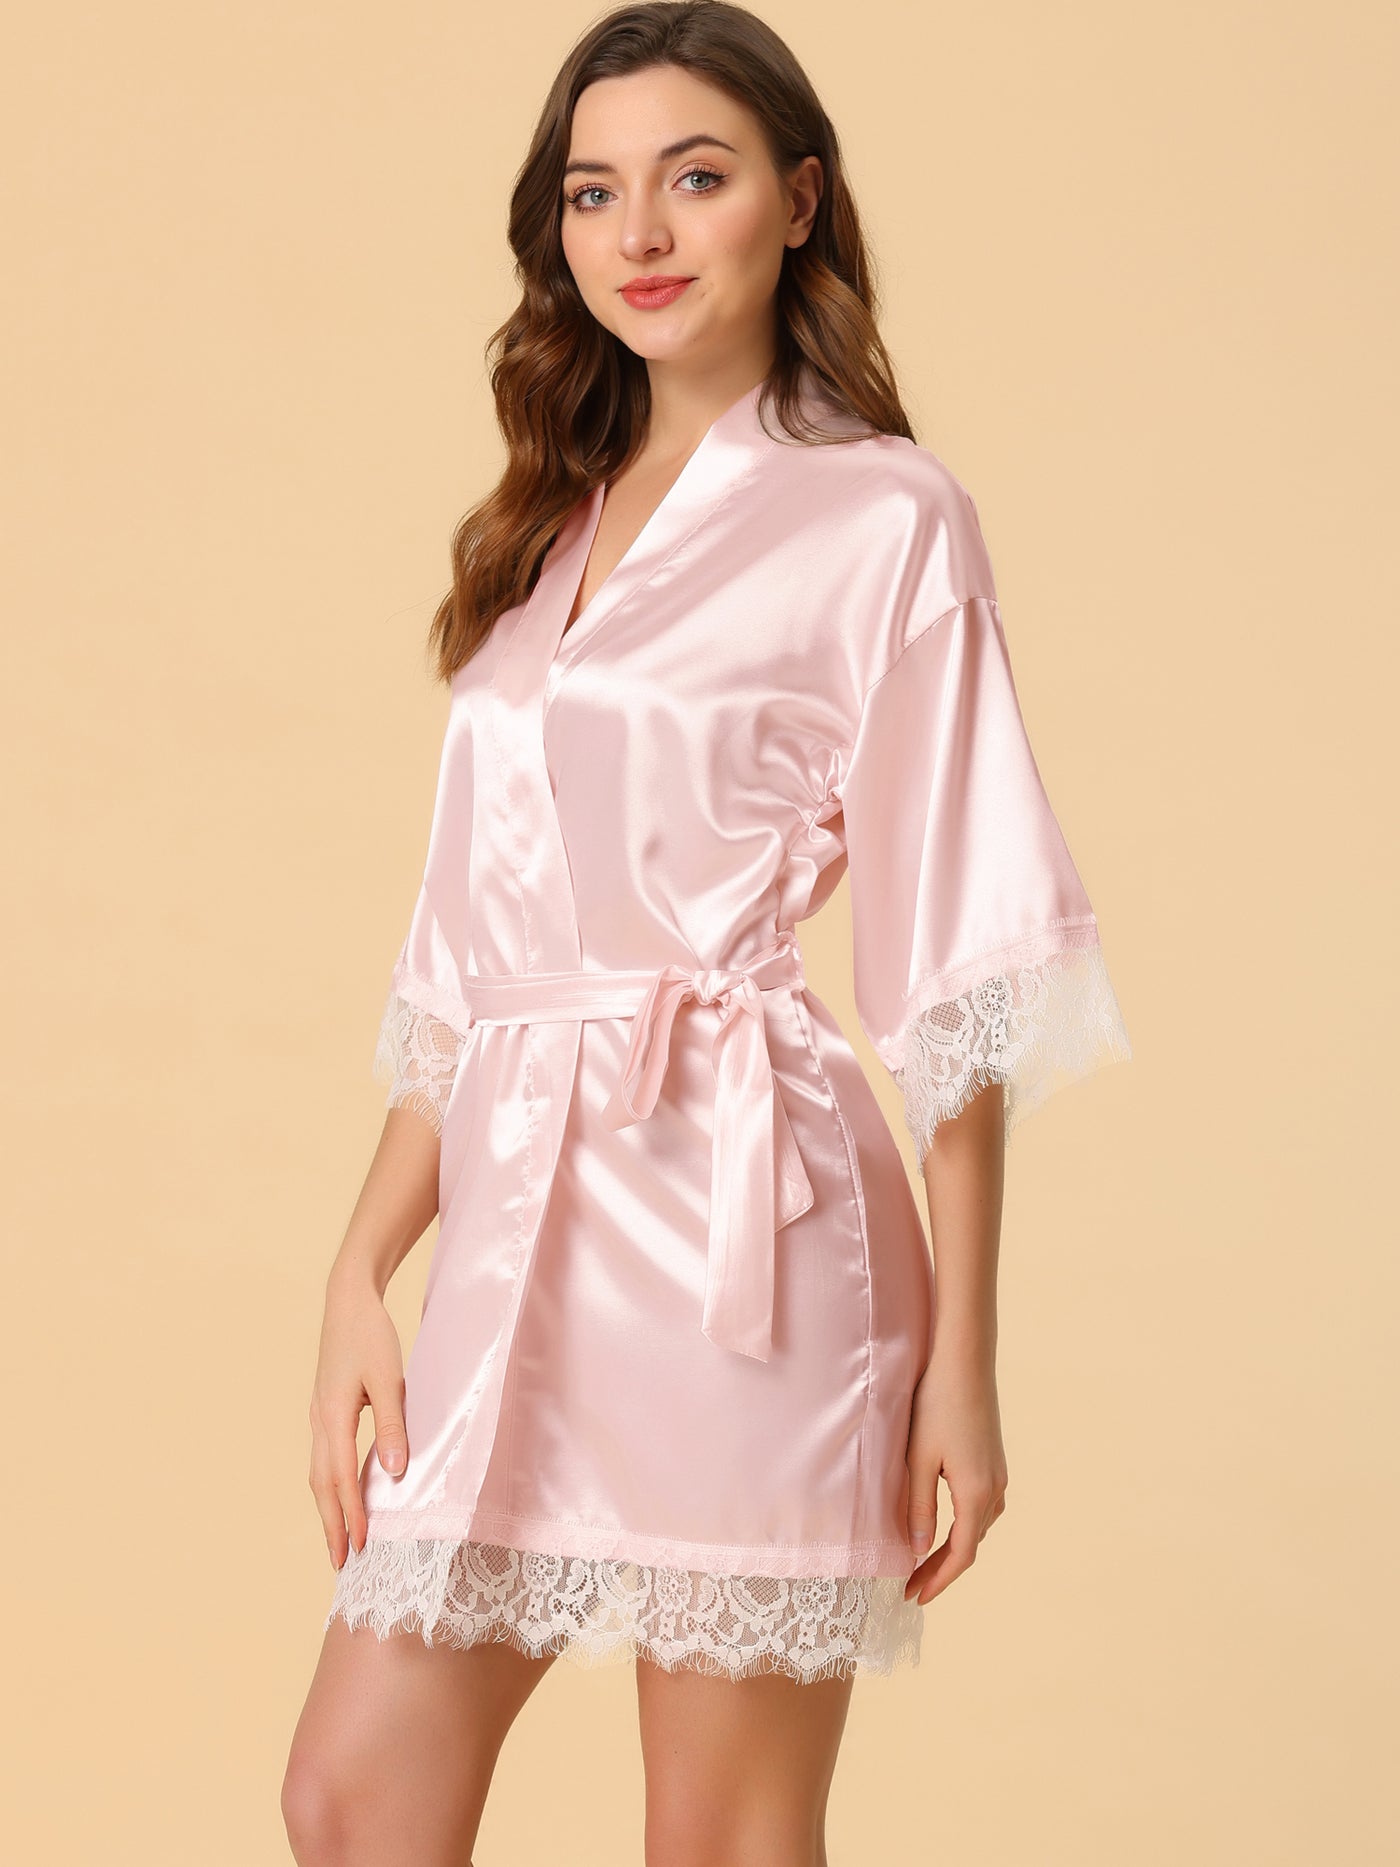 Allegra K Robe Satin Lounge Sleepwear Silky Kimono Pajama Lace Bathrobe